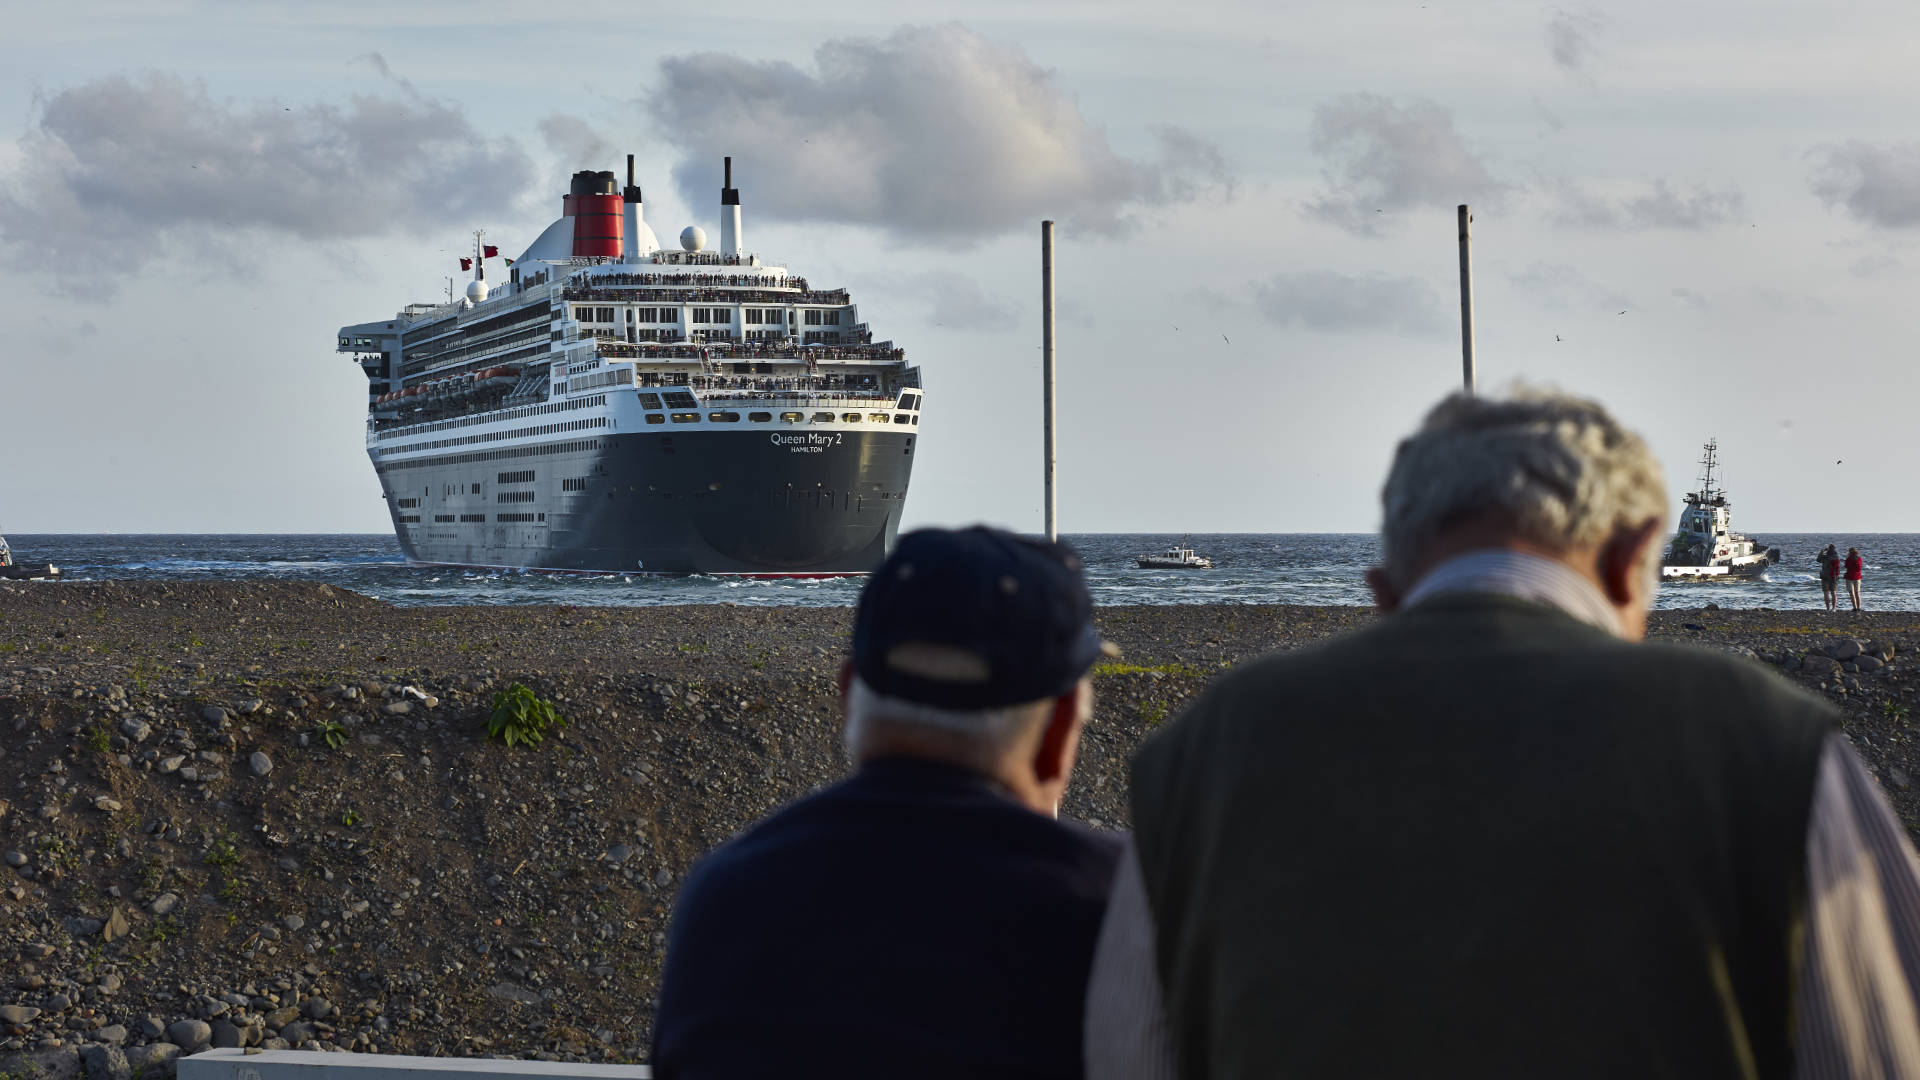 Der Hafen von Funchal Madeira – die Queen Mary II läuft aus.